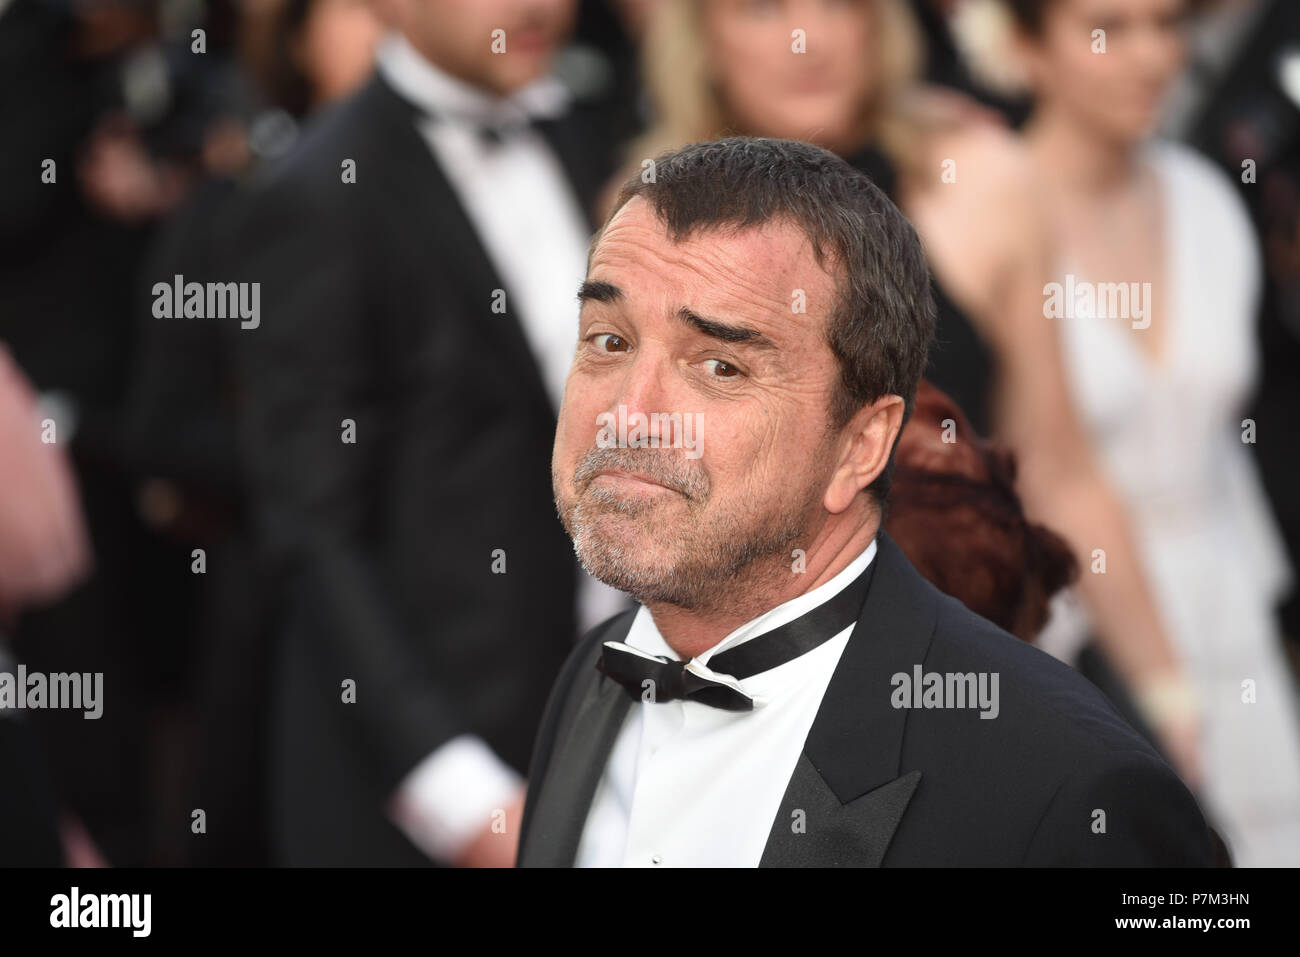 Mai 24, 2017 - Cannes, Frankreich: Arnaud Lagardere besucht die "Betrogen" Premiere während des 70. Filmfestival in Cannes. Arnaud Lagardere lors du 70eme Festival de Cannes. *** Frankreich/KEINE VERKÄUFE IN DEN FRANZÖSISCHEN MEDIEN *** Stockfoto